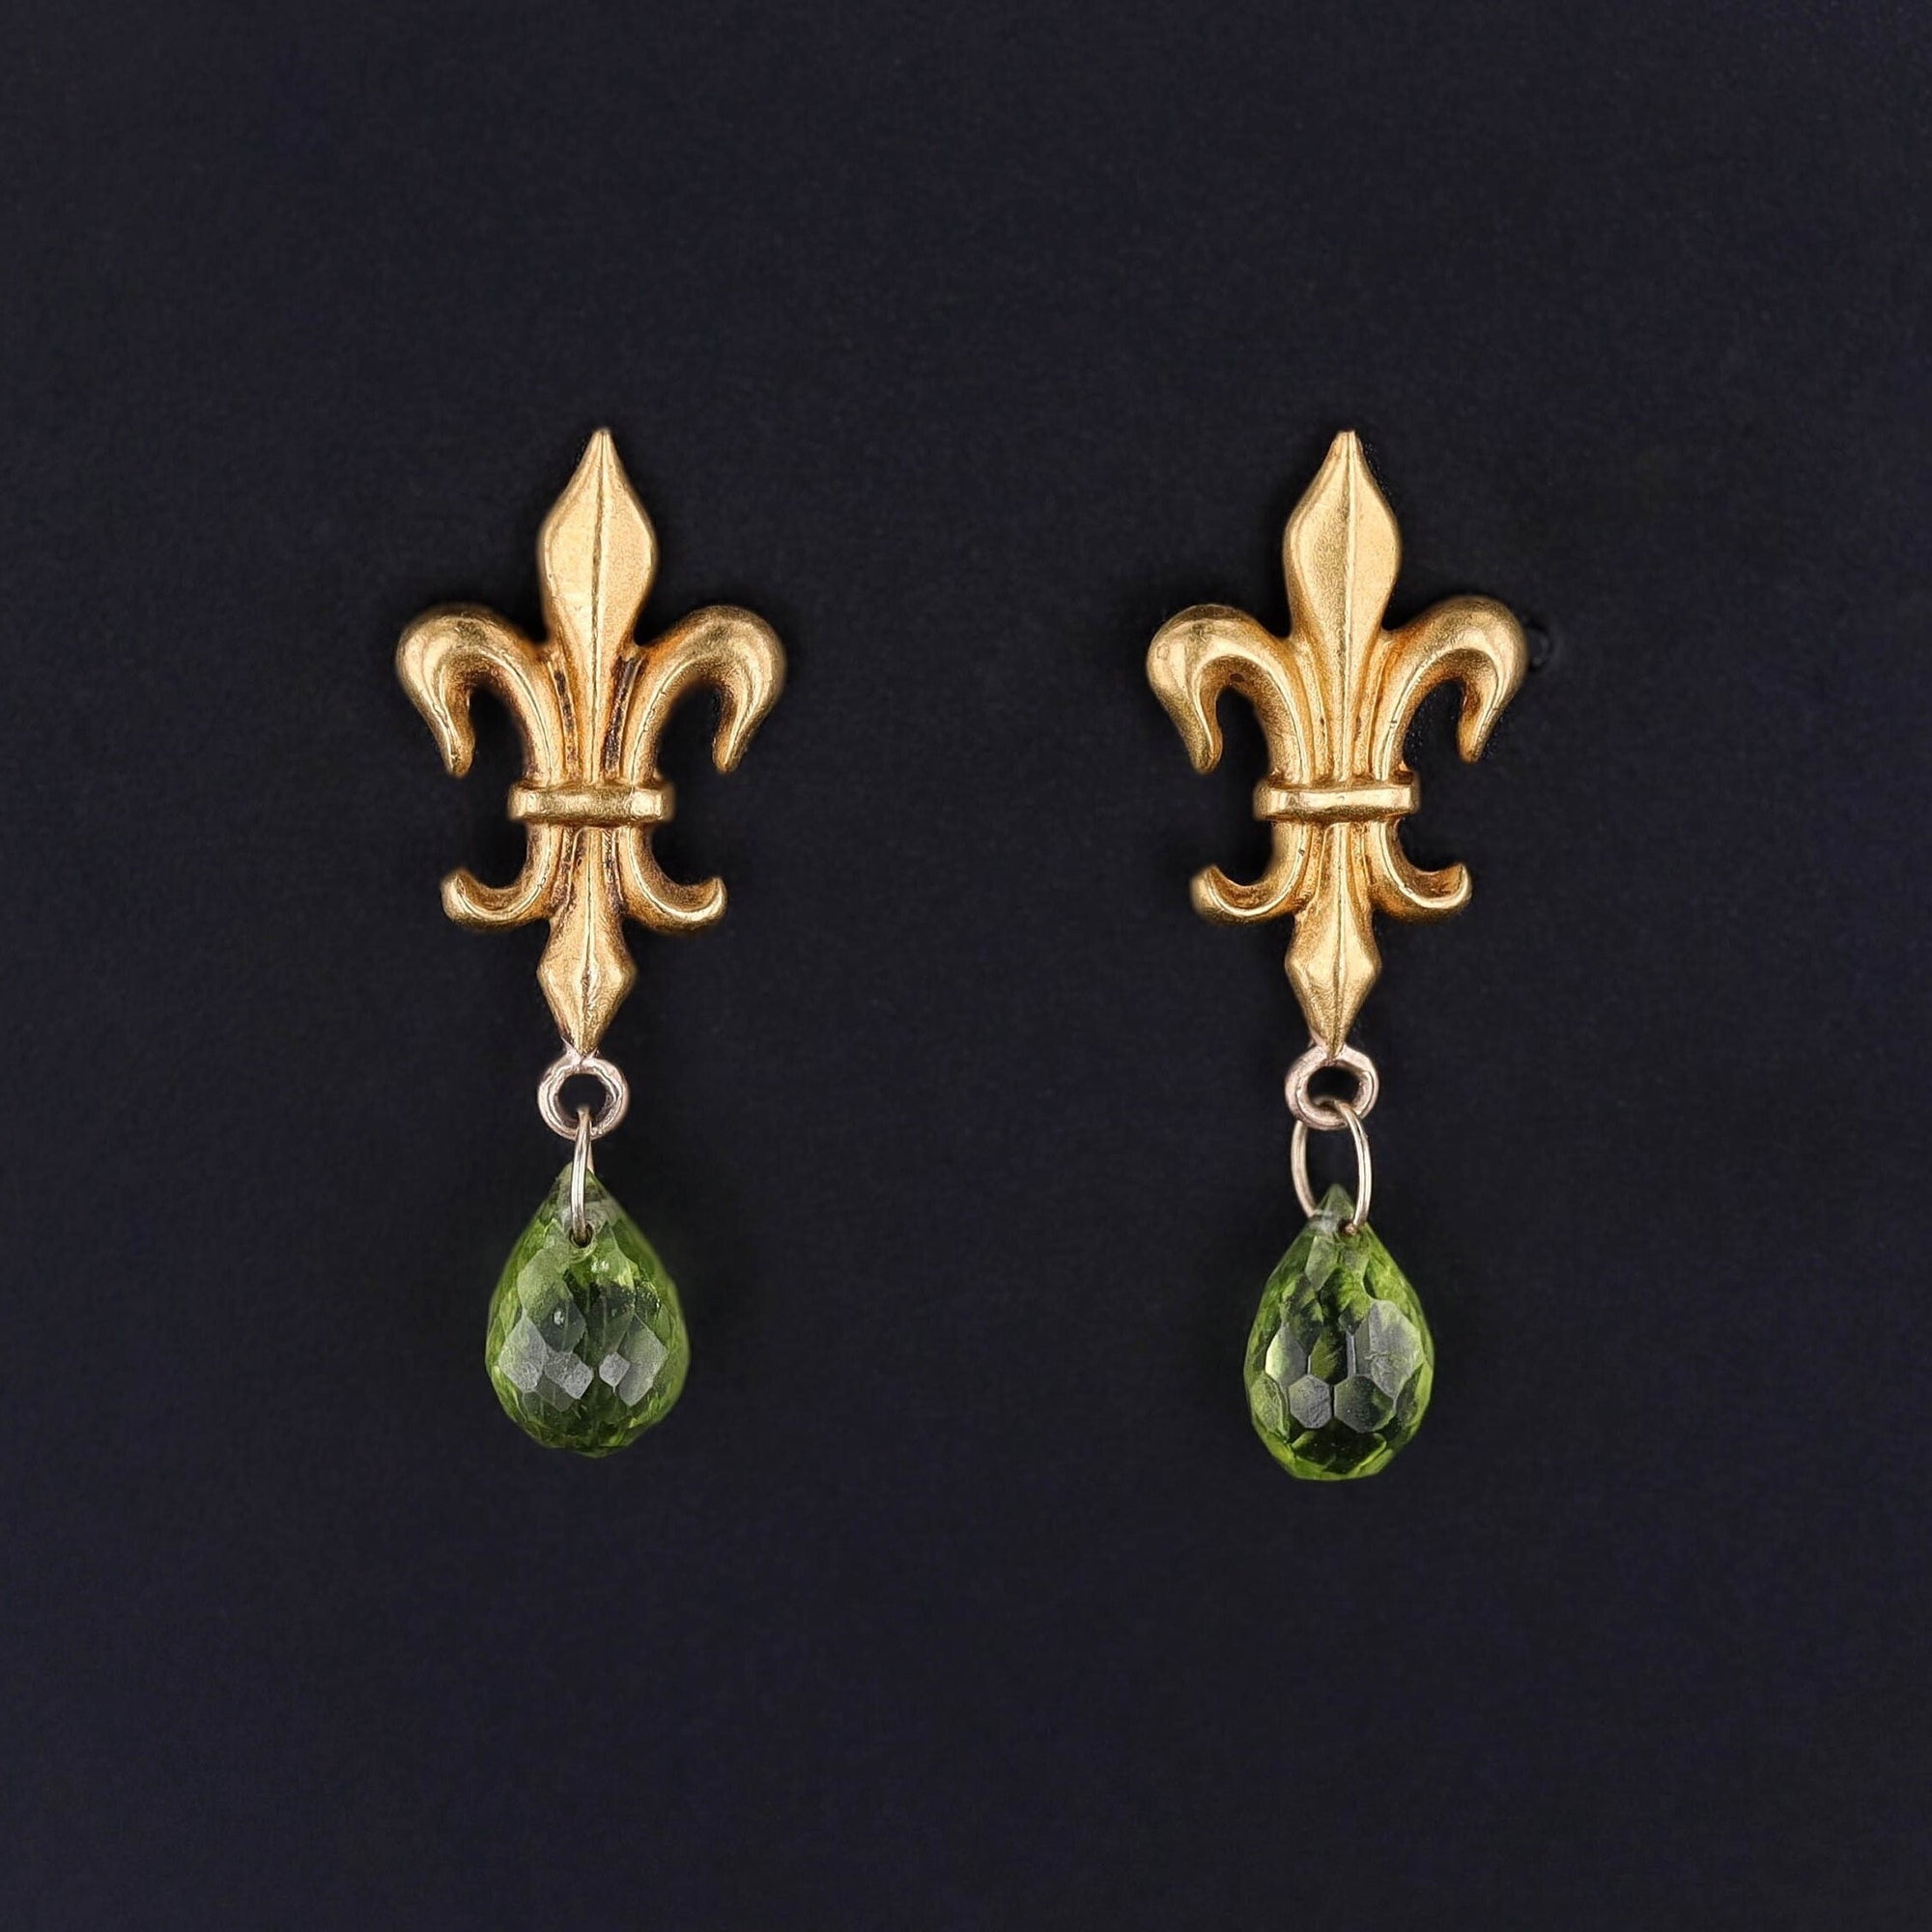 Antique Fleur de Lis Conversion Earrings of 14k Gold